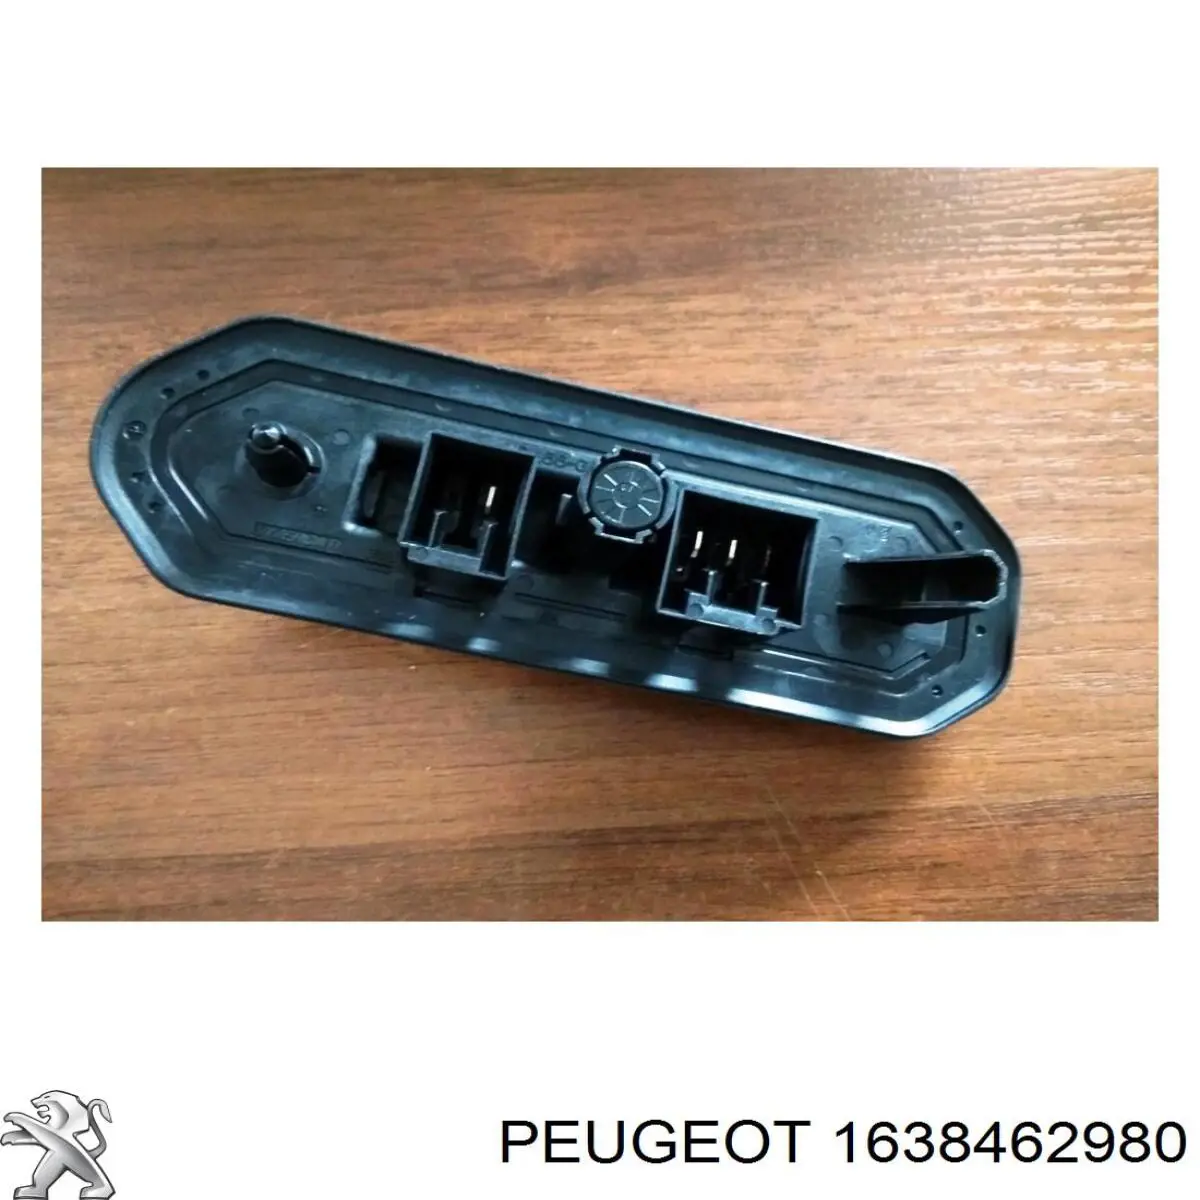 Sensor, Interruptor de contacto eléctrico para puerta corrediza, en carrocería 1638462980 Peugeot/Citroen